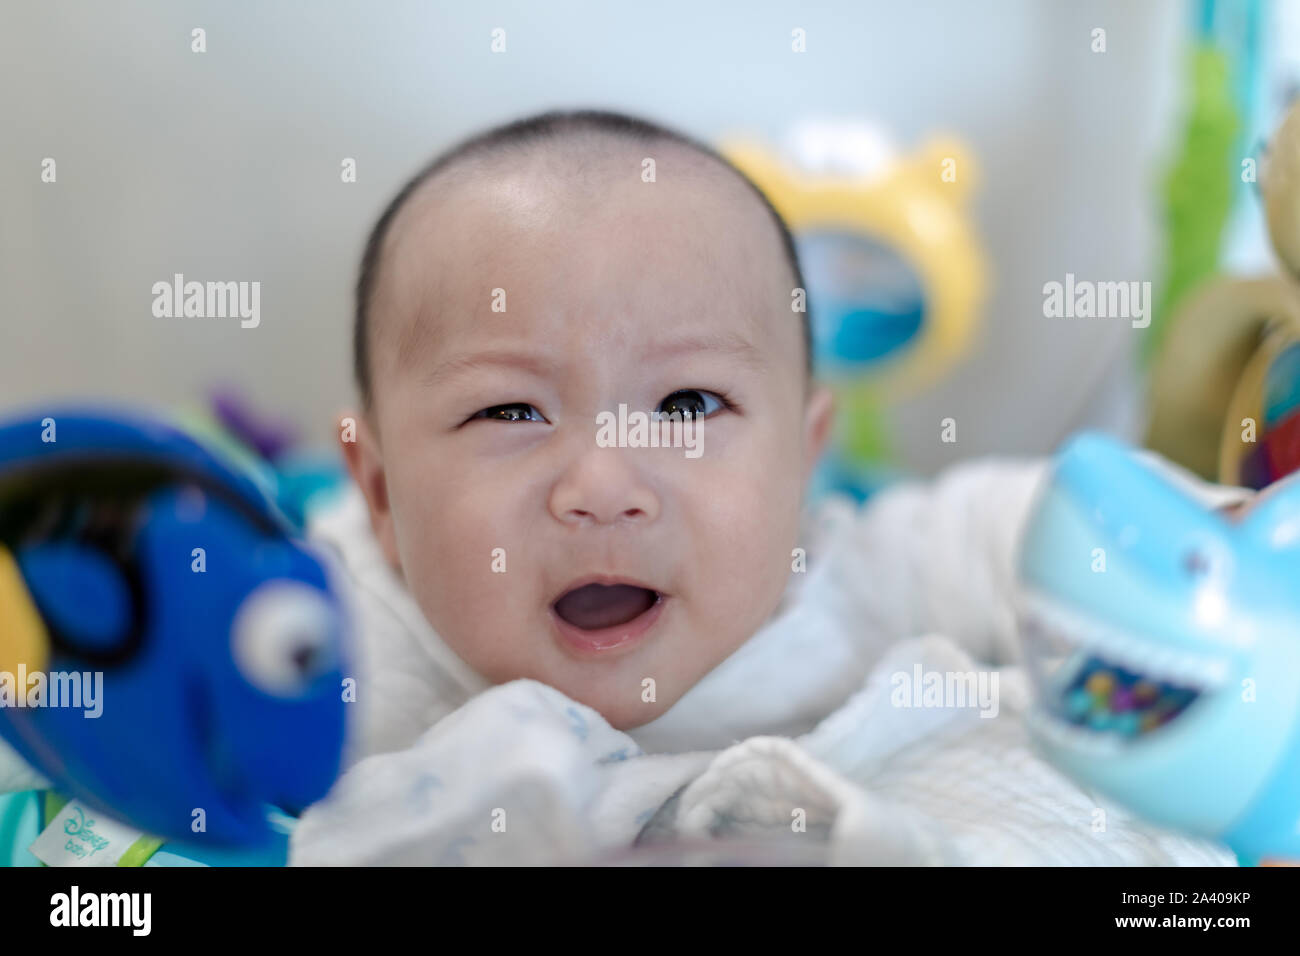 Funny baby boy winking at camera around toys Stock Photo